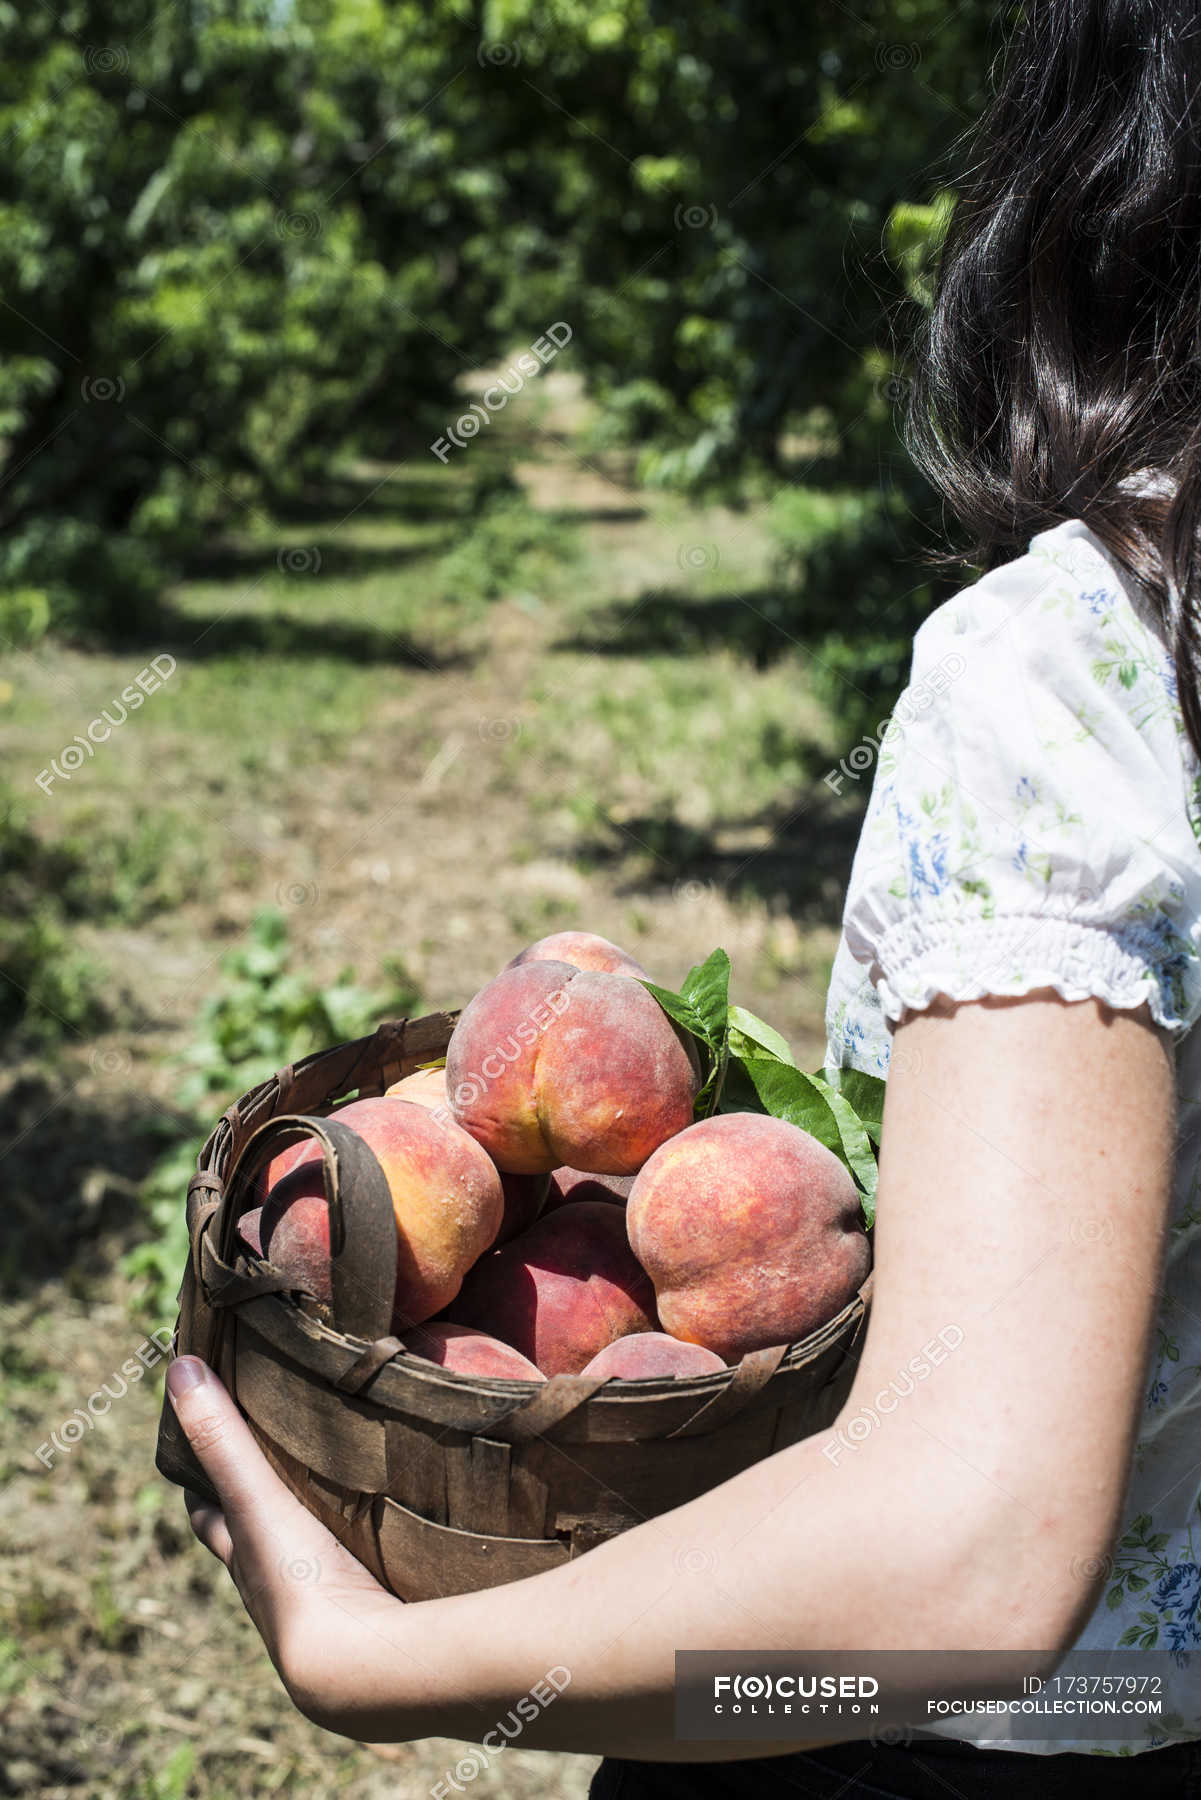 Девушка продавала персики. Персик в руке. Фотосессия с персиками. Девичьи персики. Женщина с персиками.